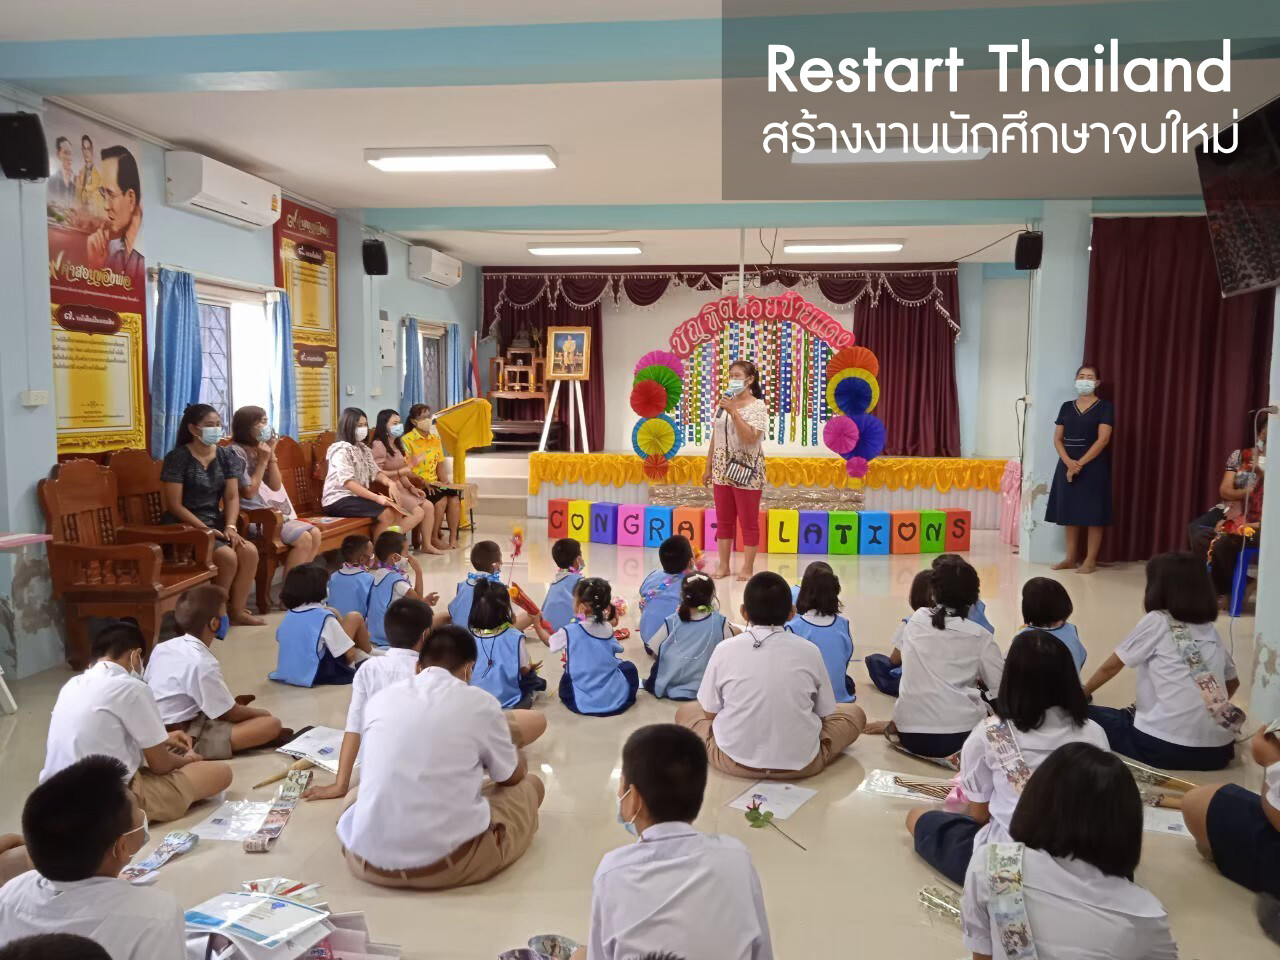 กลุ่ม ปตท. เดินหน้าจ้างงานนักศึกษาจบใหม่ และกลุ่มผู้ว่างงานกว่า 23,000 อัตราในปี 2565 ร่วมกระตุ้นเศรษฐกิจประเทศ  ต่อยอดผลสำเร็จโครงการ Restart Thailand